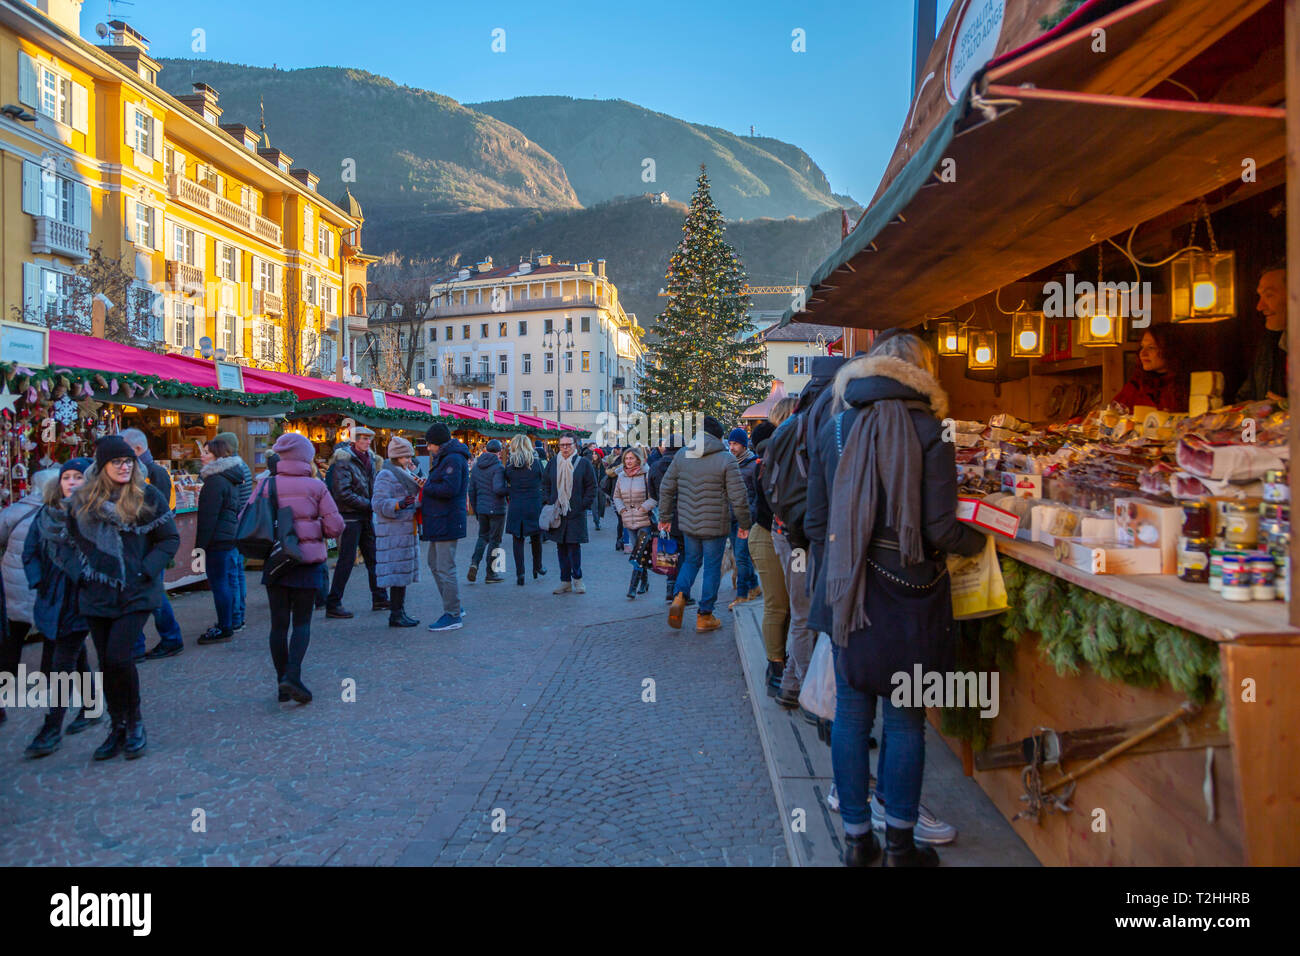 Clients au marché de Noël de la Piazza Walther, Bolzano, Italie, Europe Banque D'Images